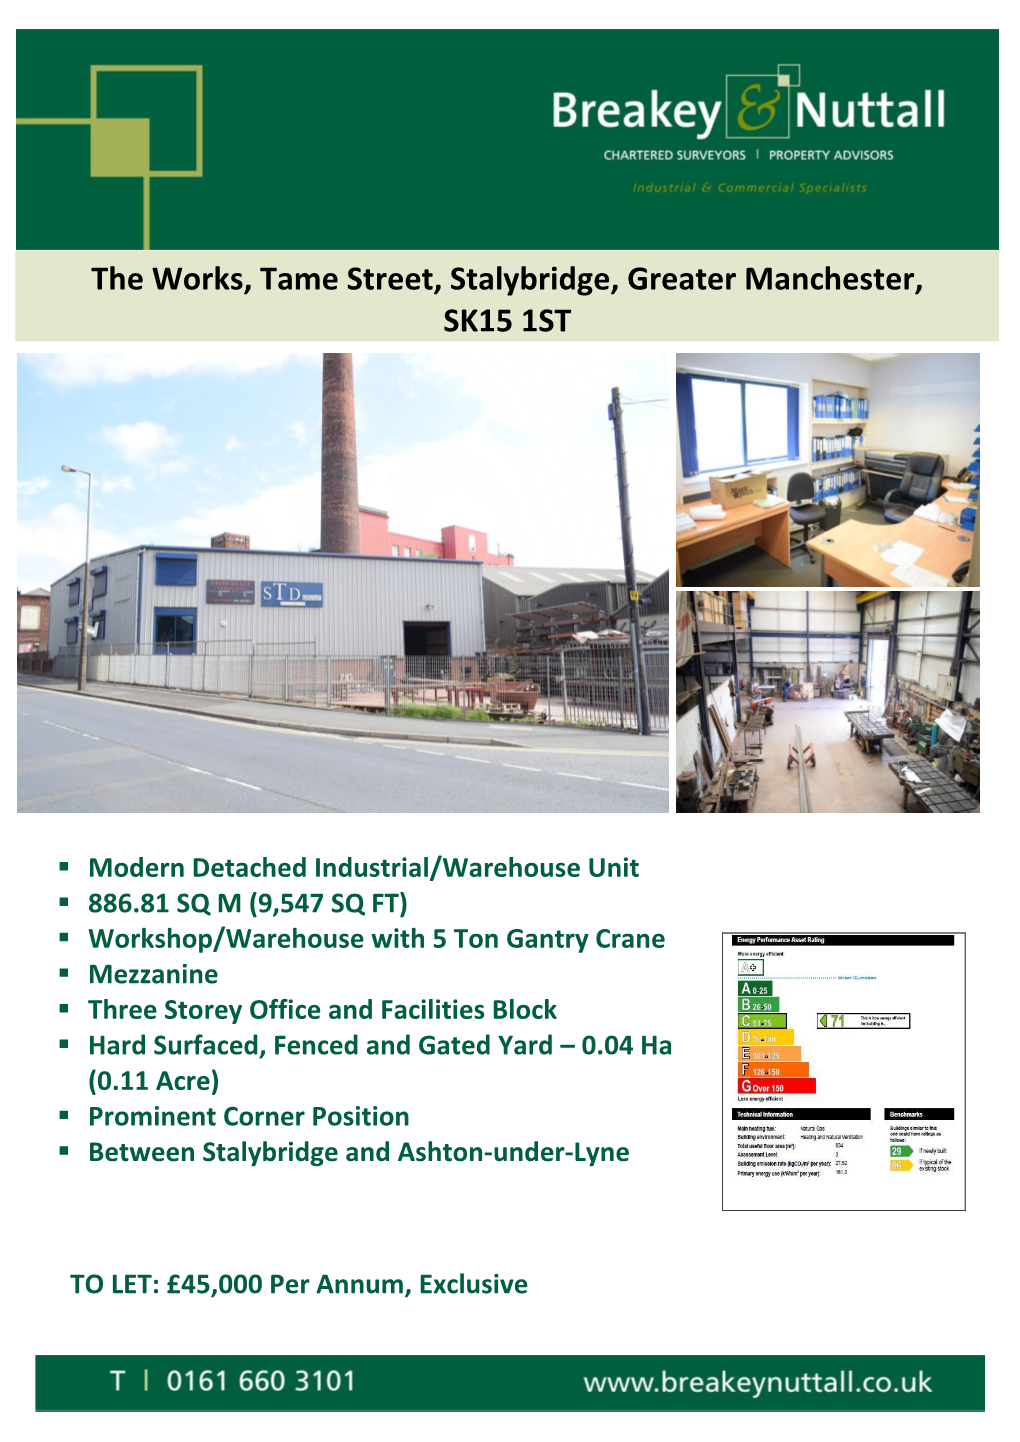 The Works, Tame Street, Stalybridge, Greater Manchester, SK15 1ST